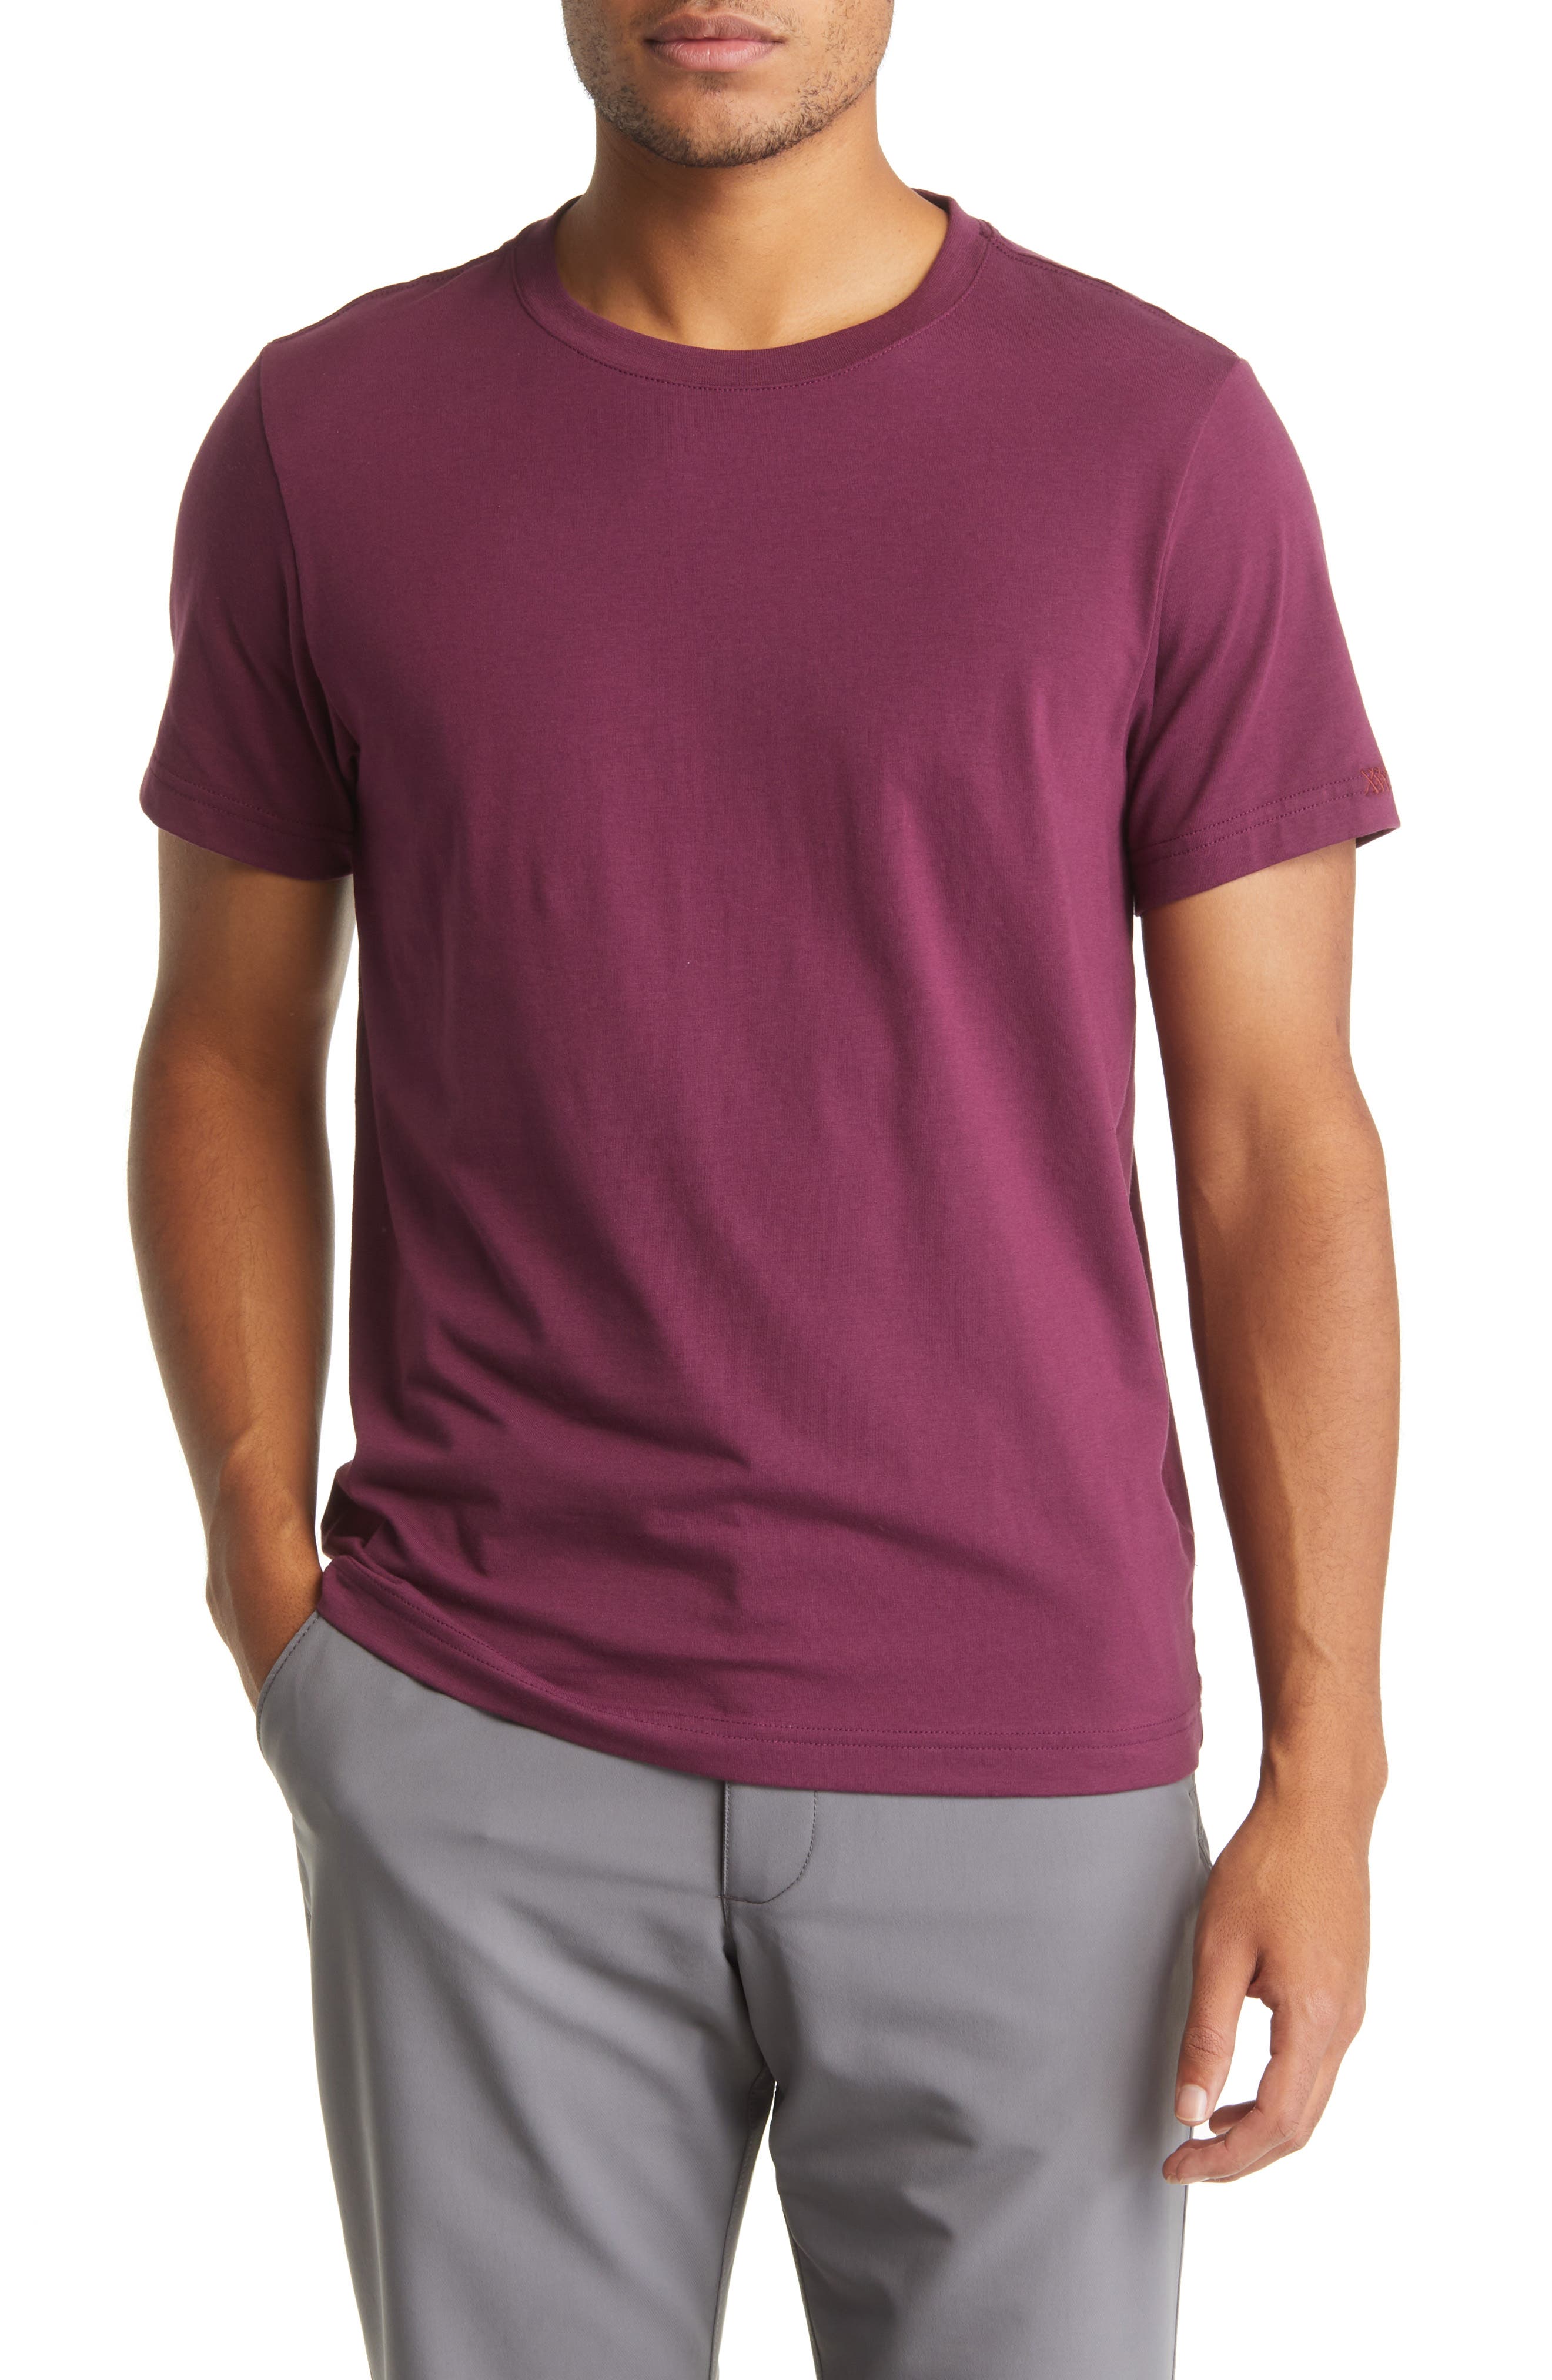 WOMEN FASHION Shirts & T-shirts Sequin Purple S Mango blouse discount 65% 